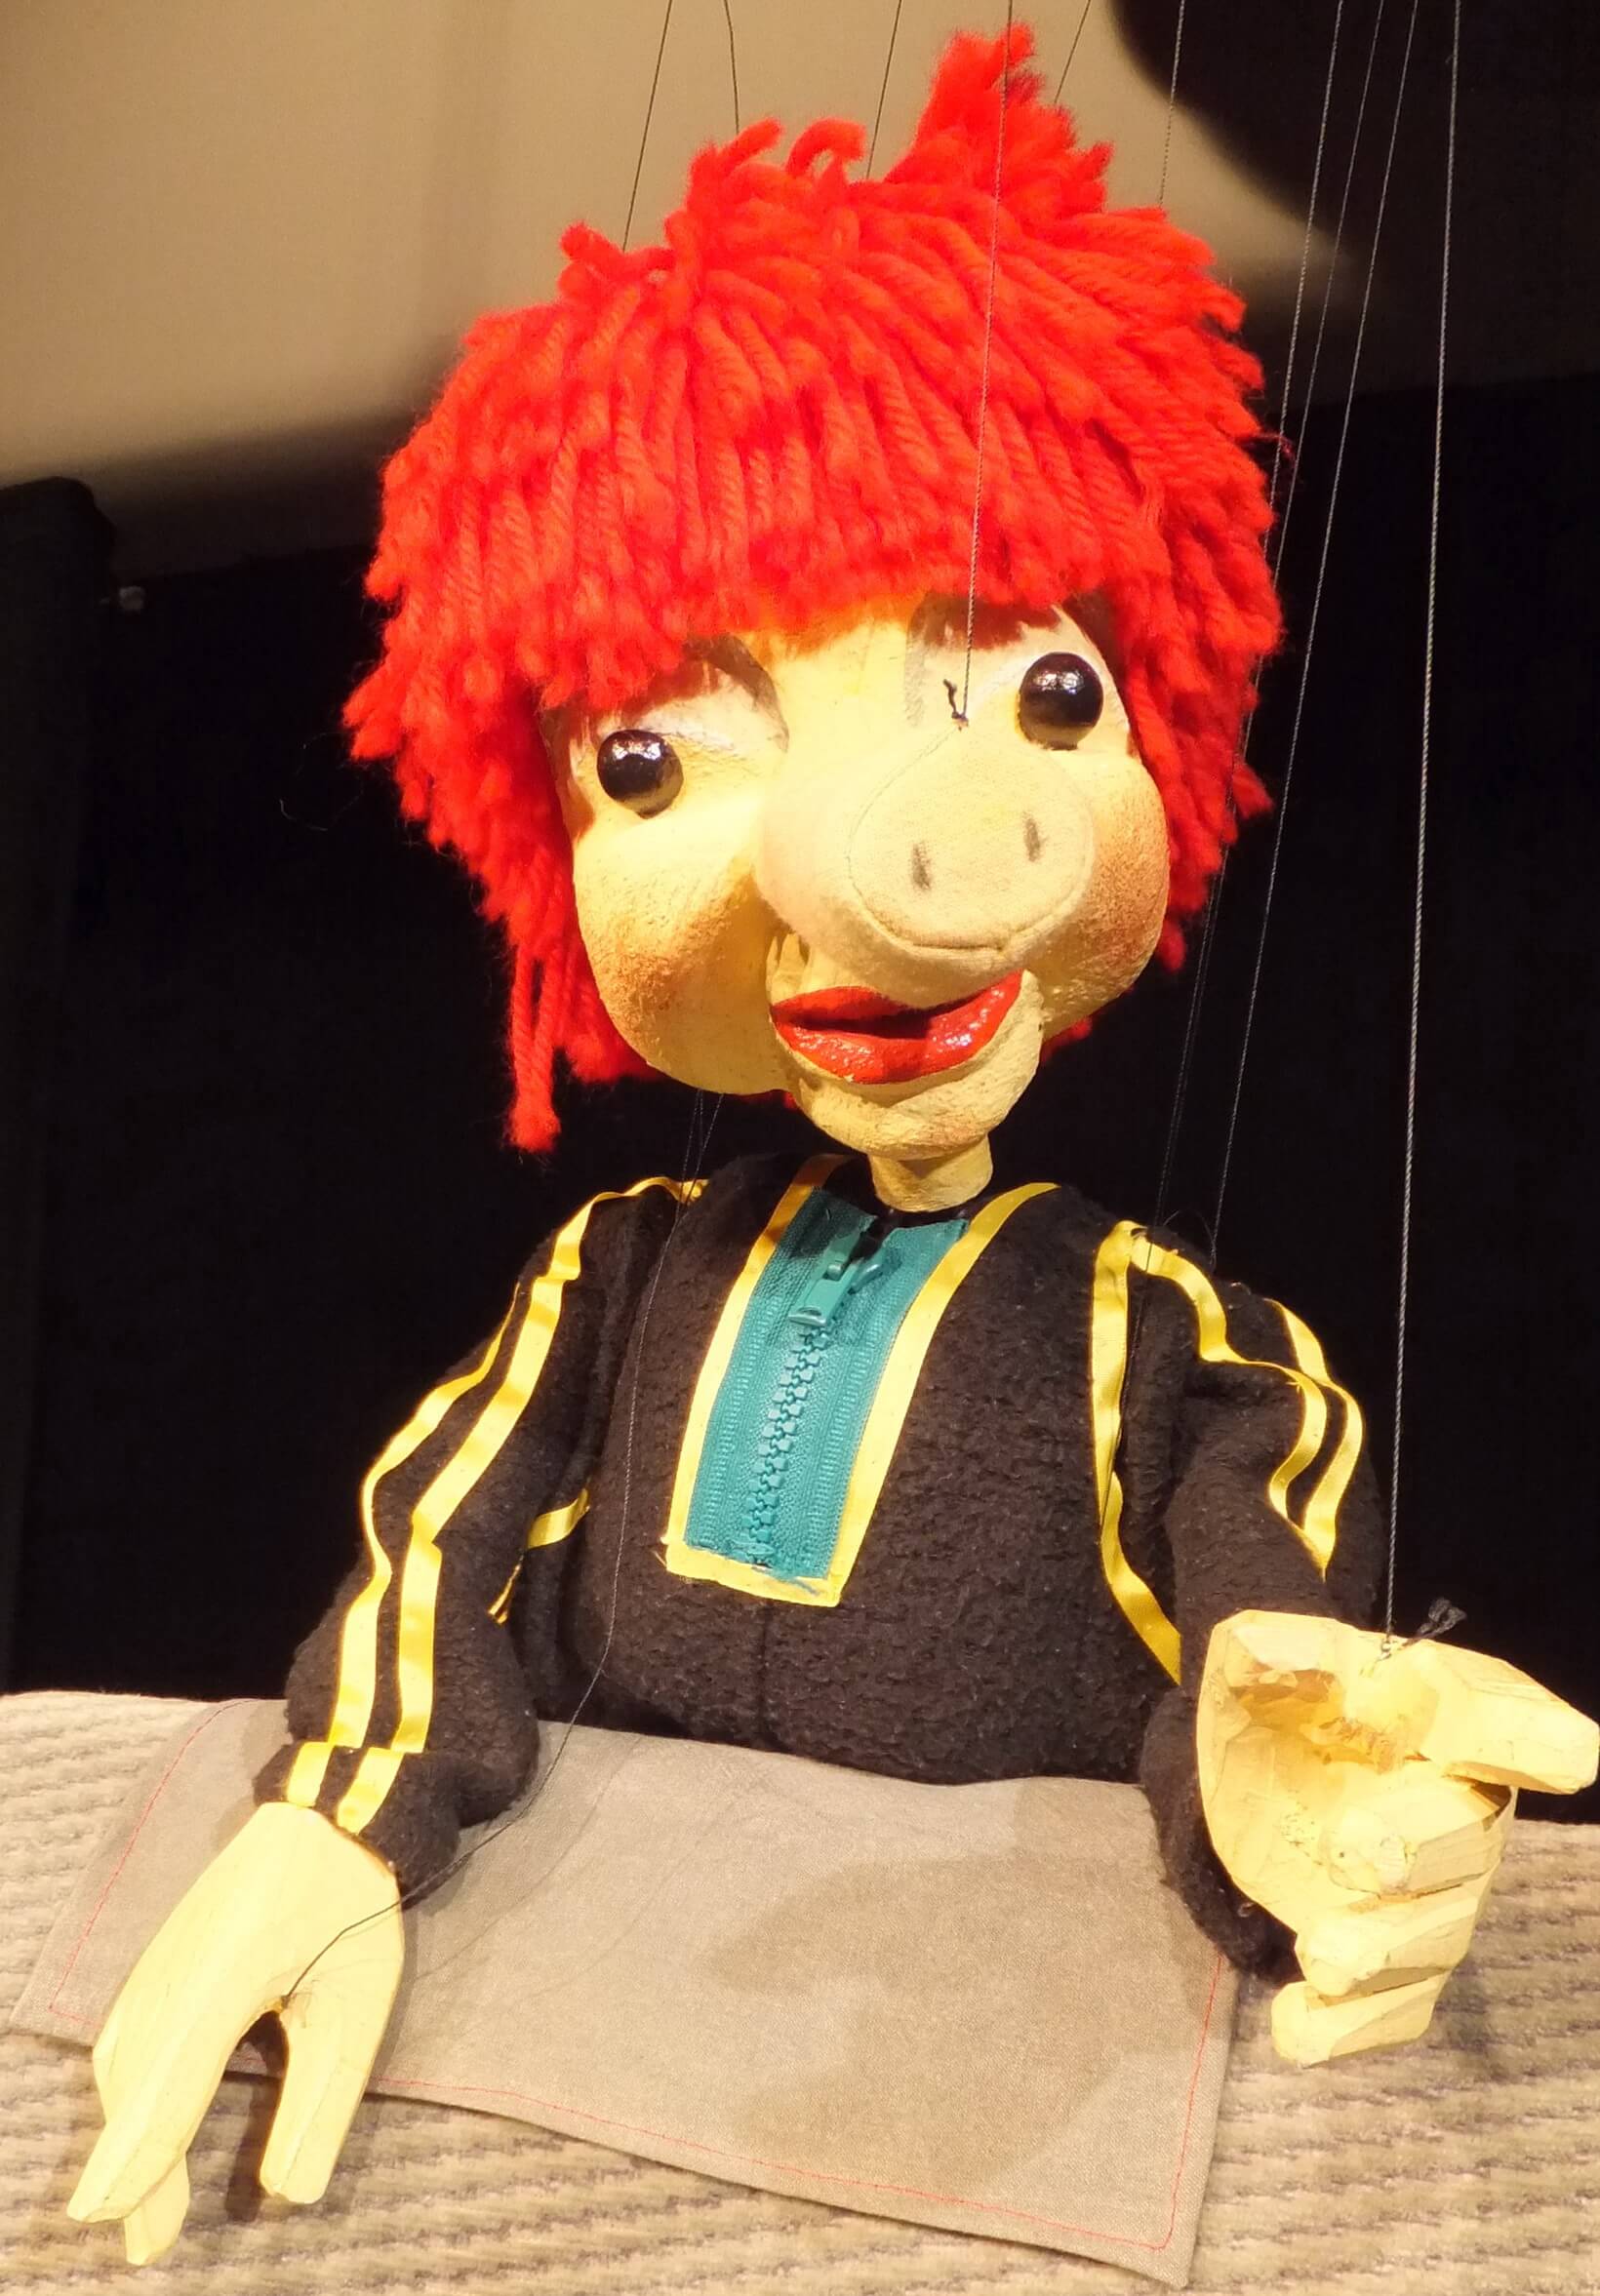 Foto: Großaufnahme vom Sams (Marionette), welches einen Taucheranzug trägt